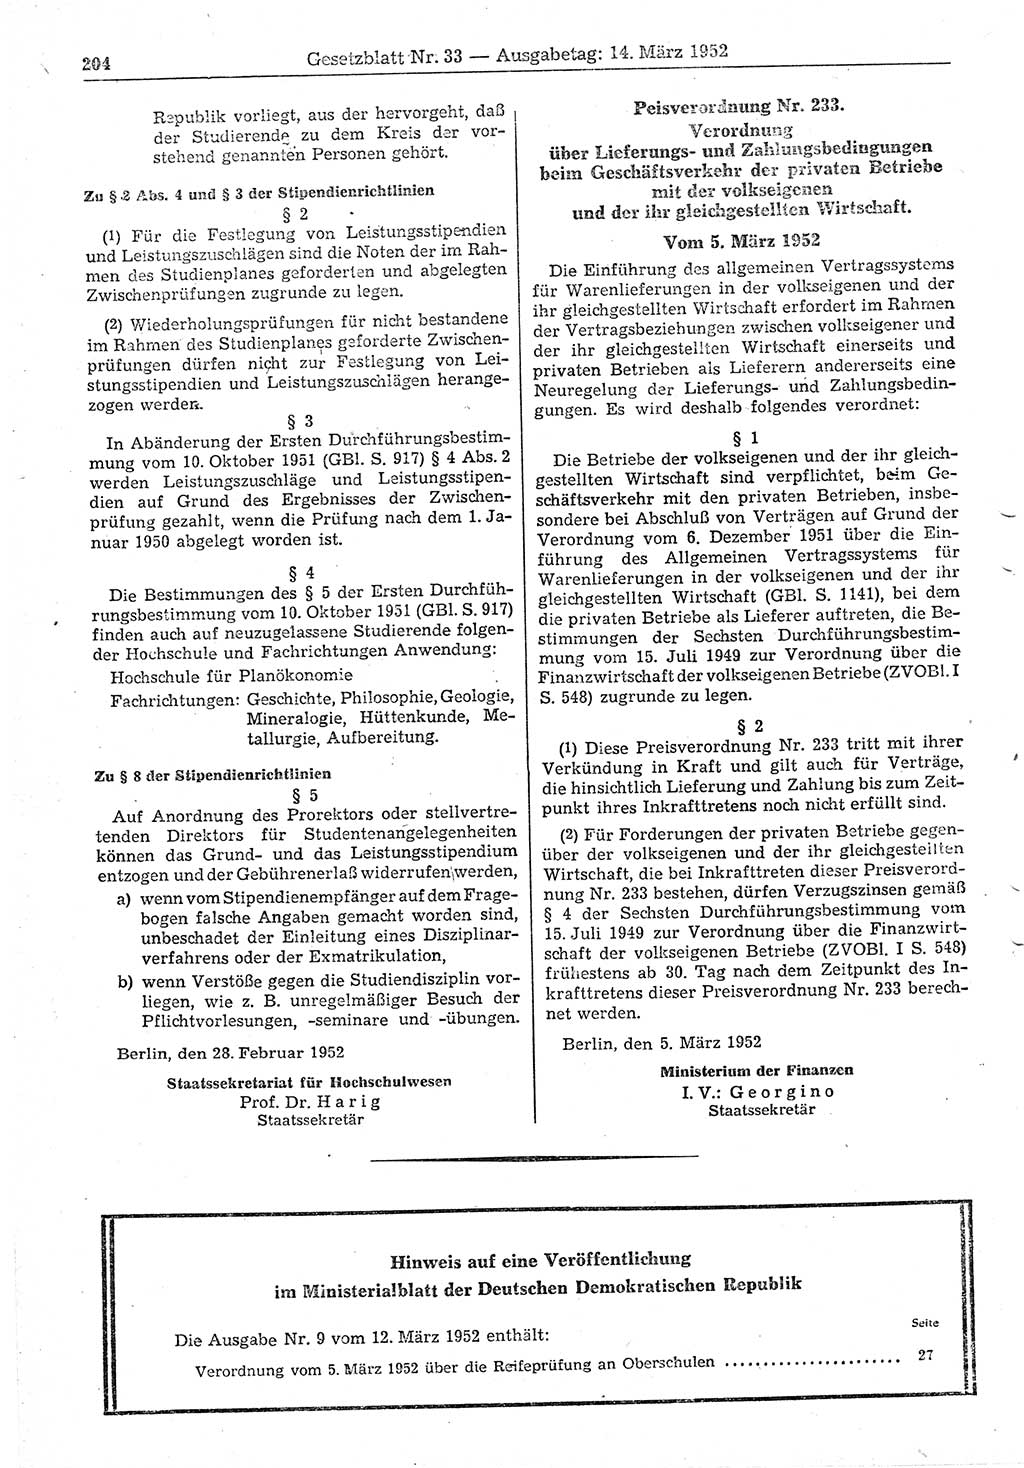 Gesetzblatt (GBl.) der Deutschen Demokratischen Republik (DDR) 1952, Seite 204 (GBl. DDR 1952, S. 204)